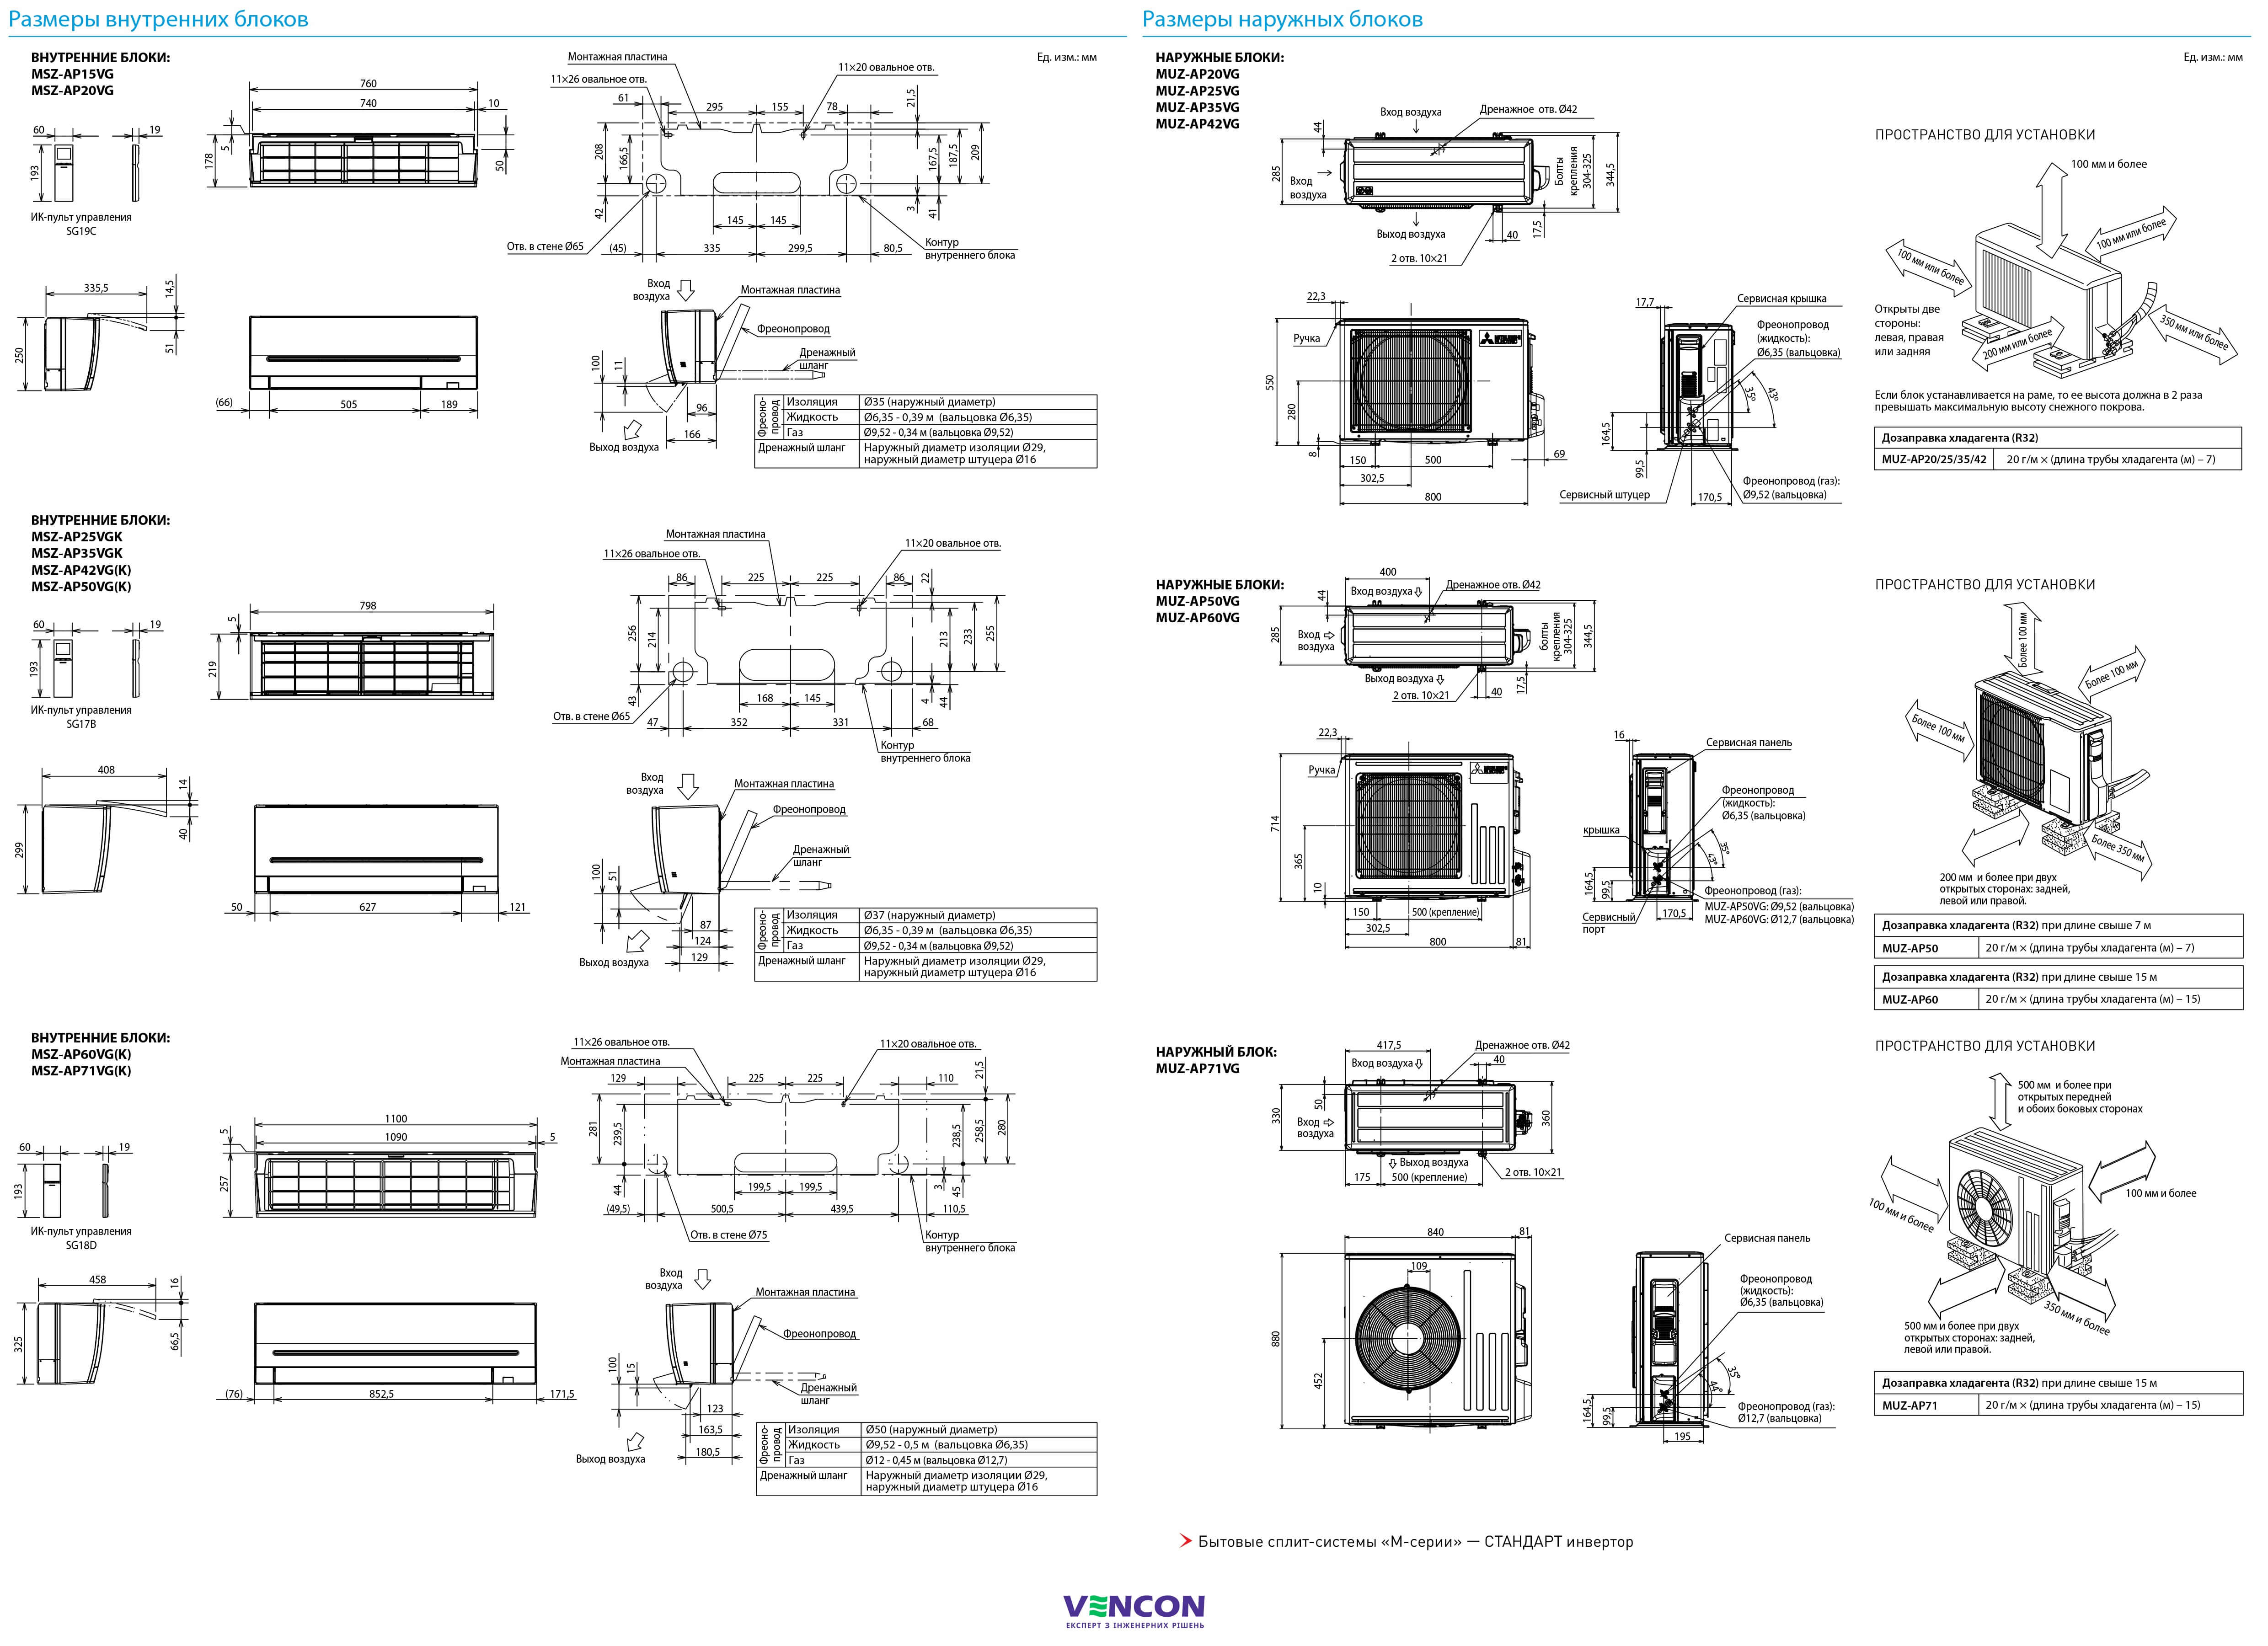 Mitsubishi Electric Standard Inverter MSZ-AP60VGK/MUZ-AP60VG Габаритні розміри